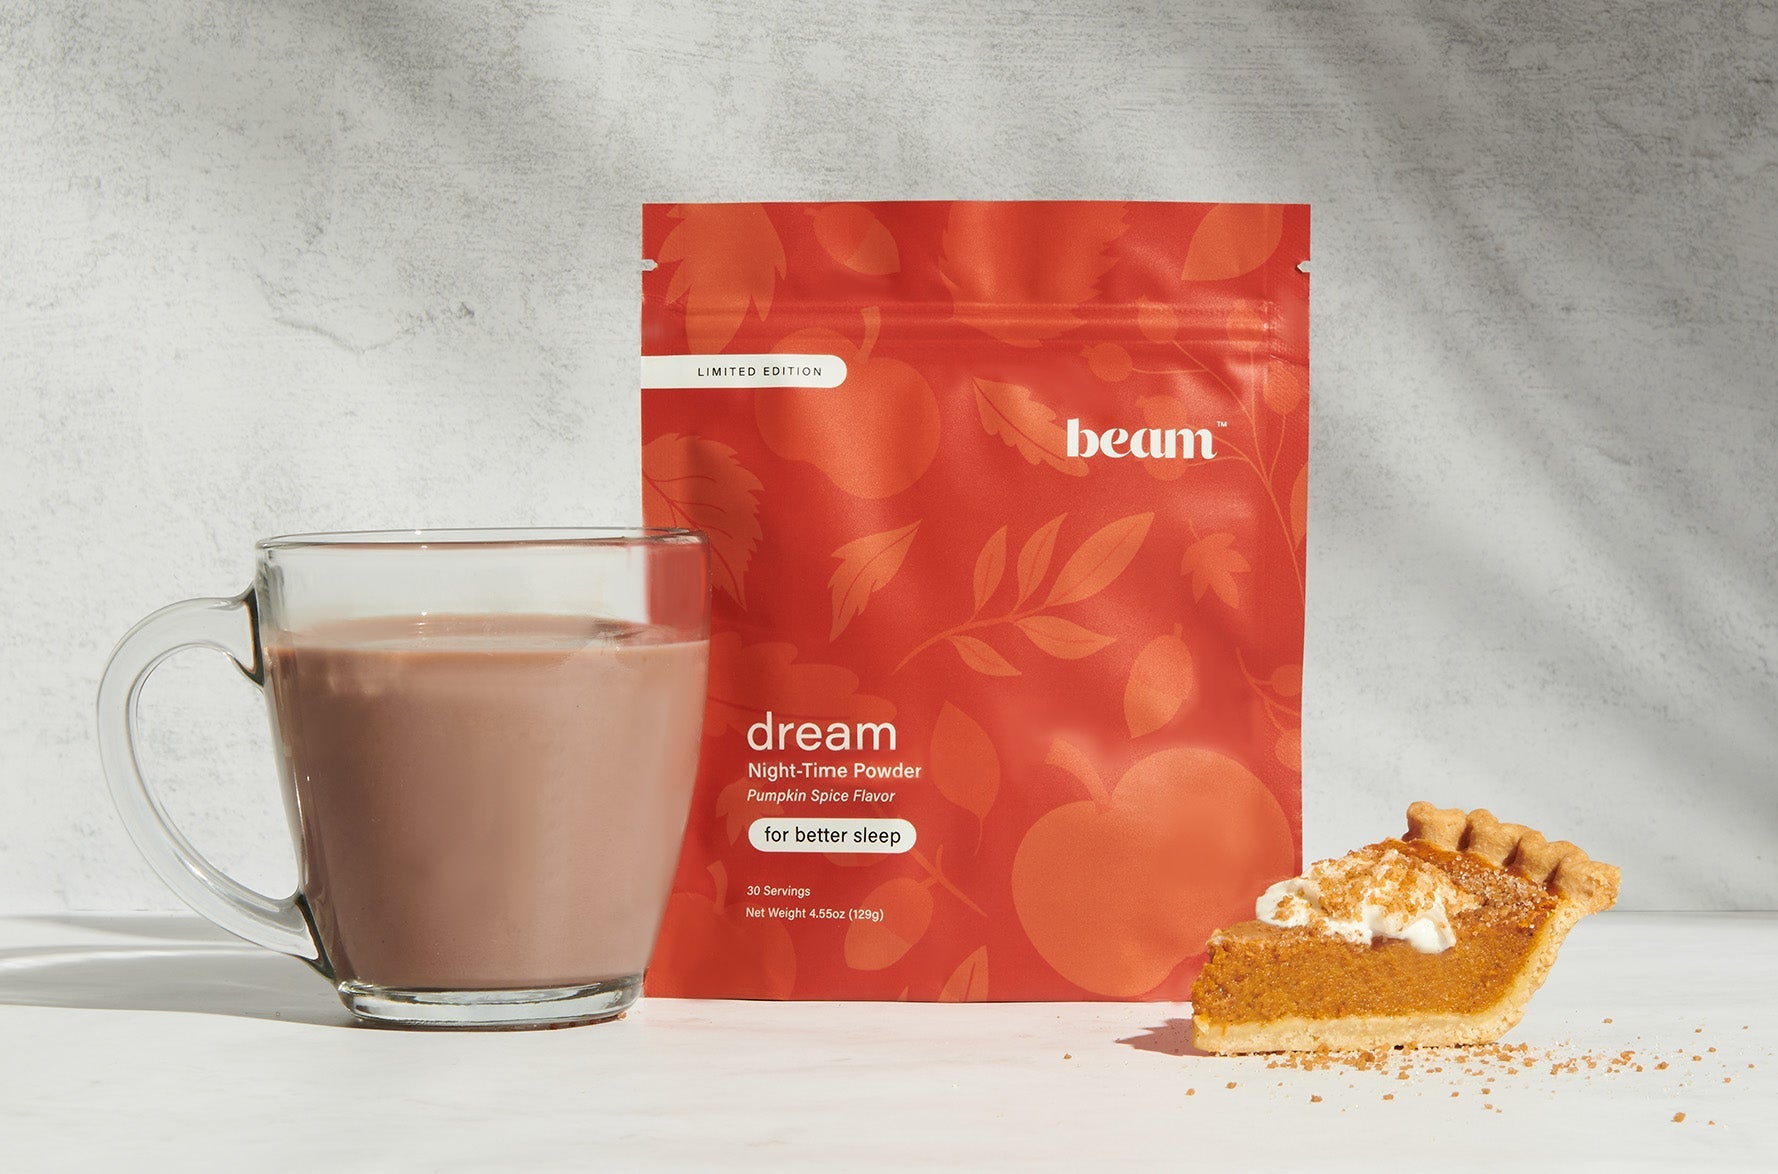 Pumpkin Spice Dream Powder — save 30%, 3-month supply